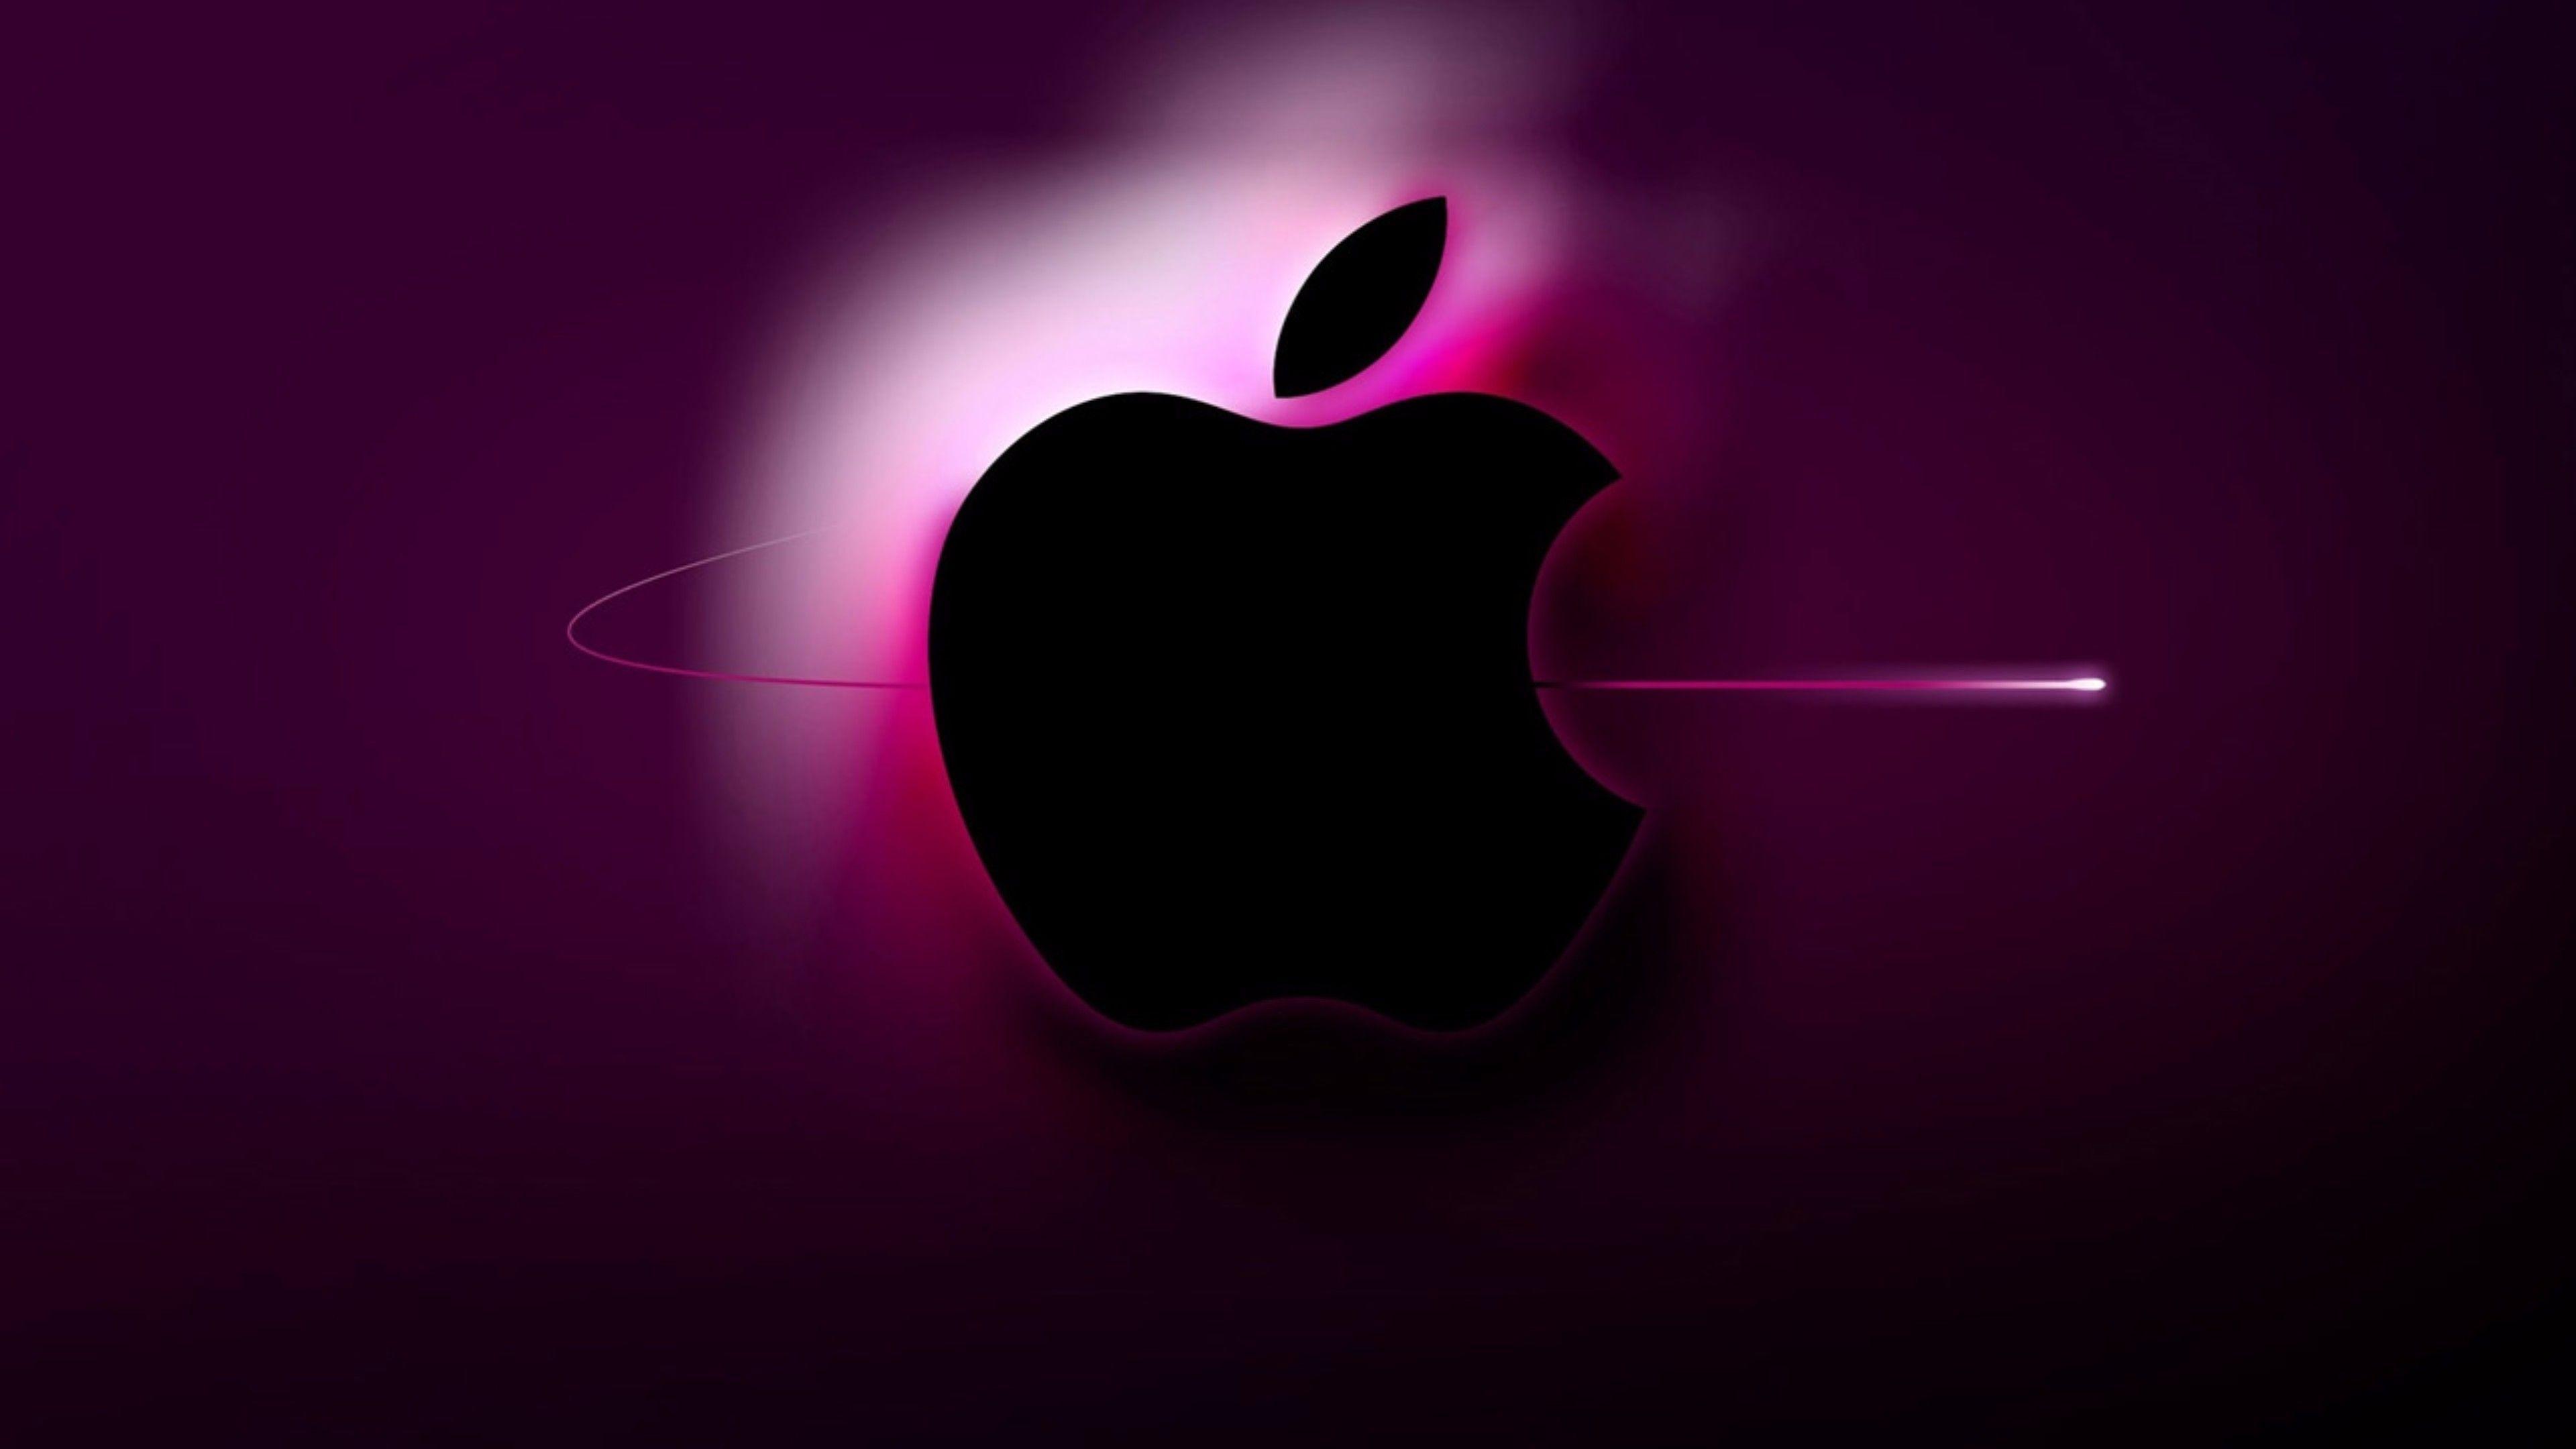 Purple Apple Logo 4K Wallpaper. Free 4K Wallpaper